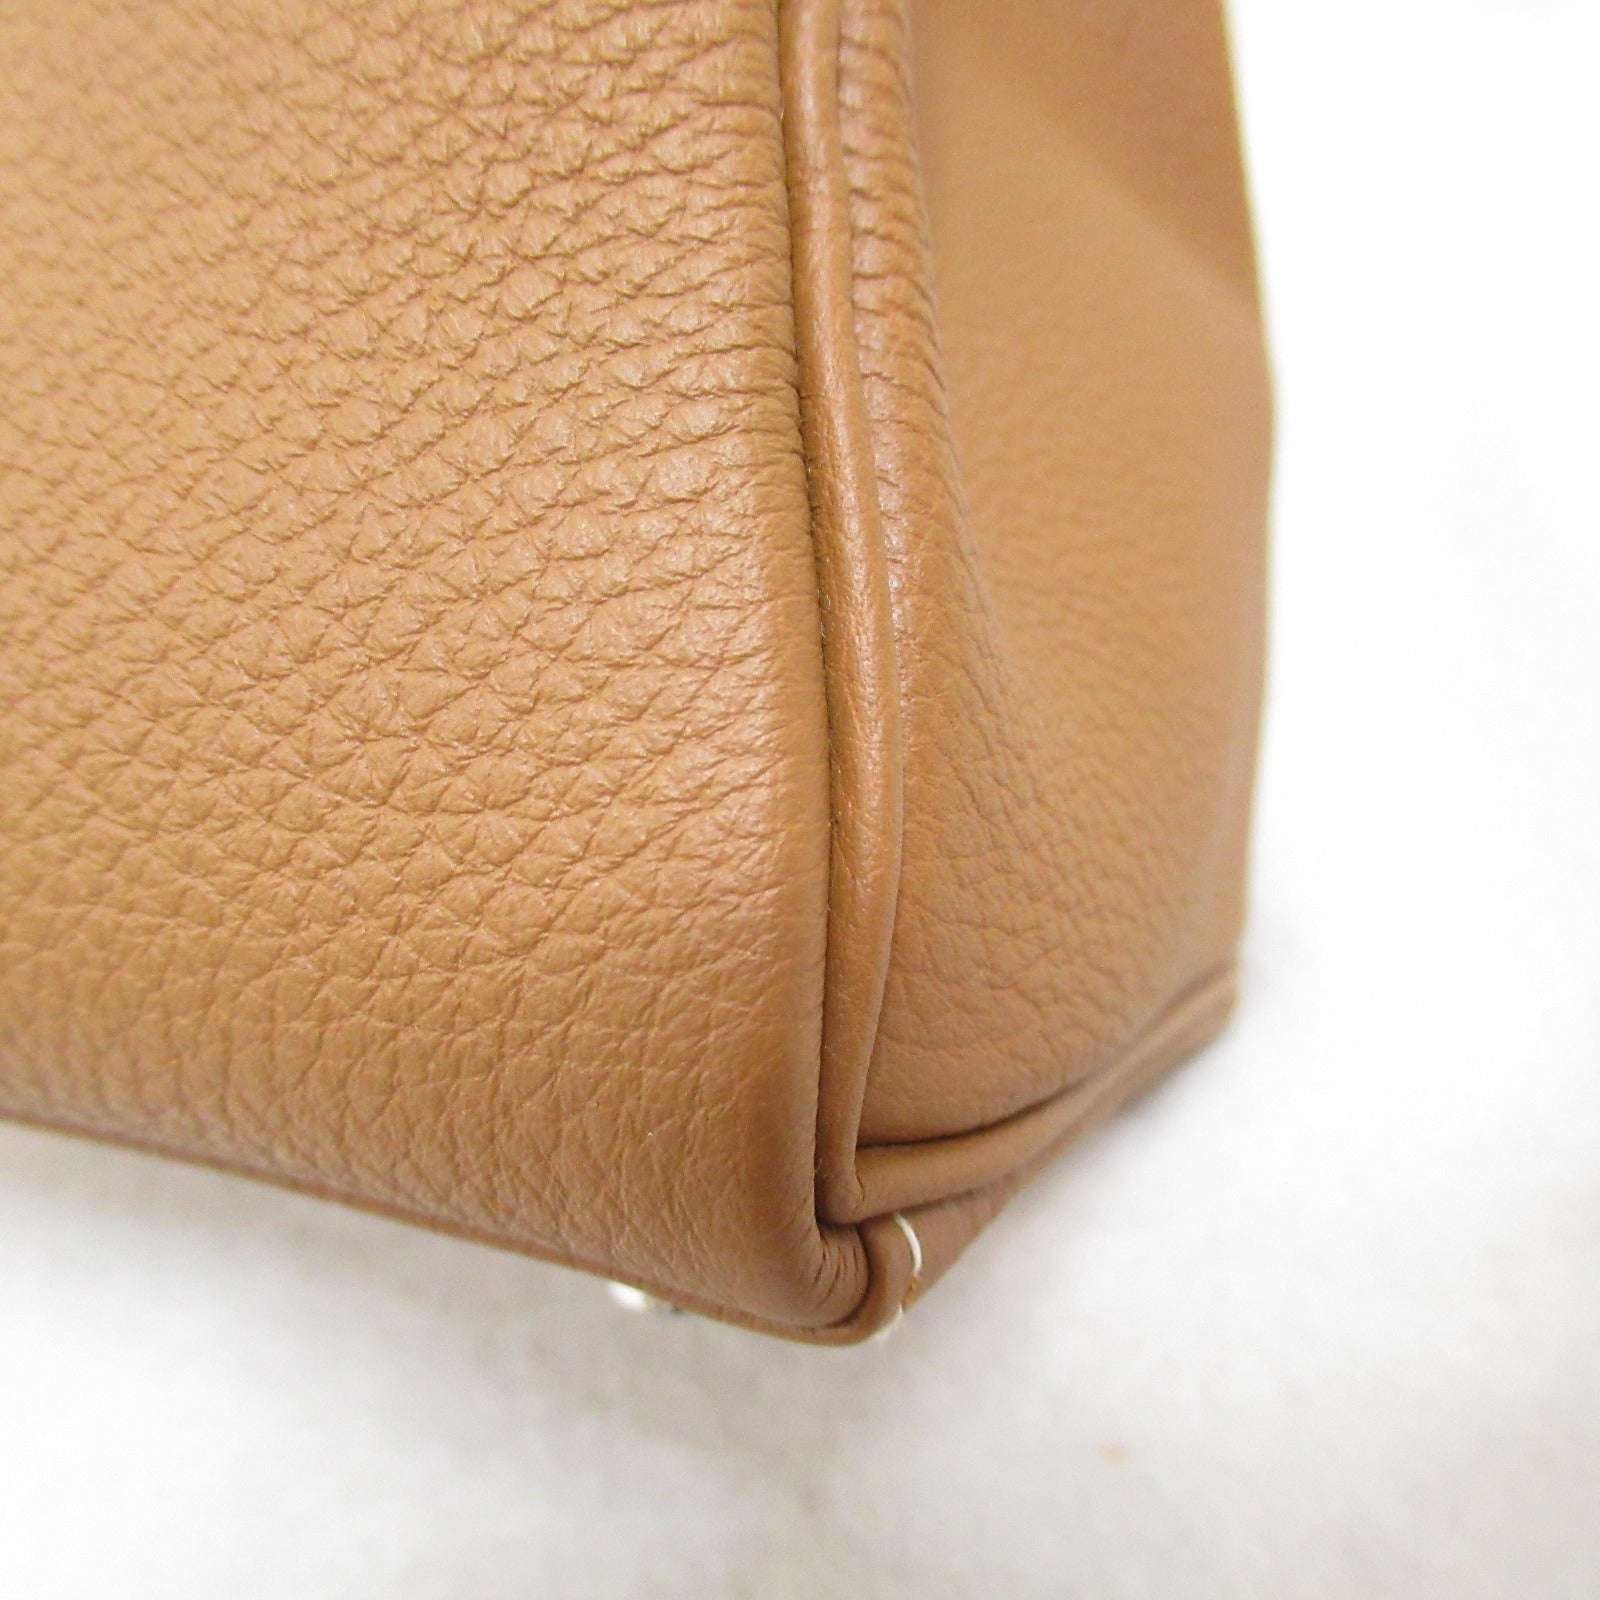 Hermes Kelly 25 Handbag In-Shift Handbag Handbag Leather TOGO LADY